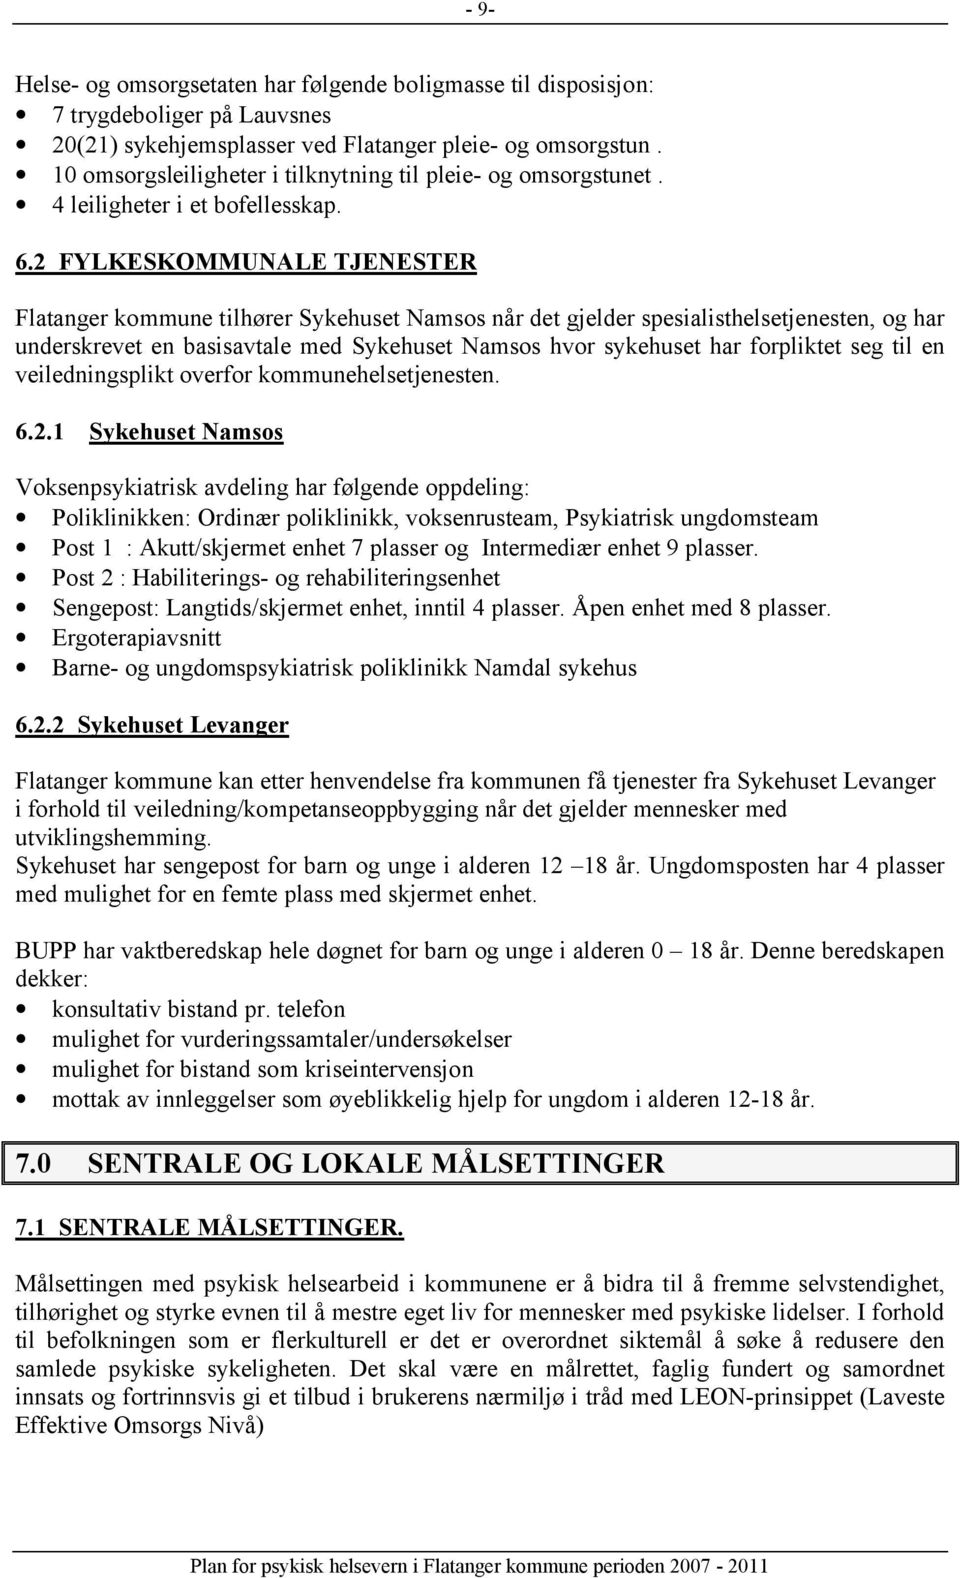 2 FYLKESKOMMUNALE TJENESTER Flatanger kommune tilhører Sykehuset Namsos når det gjelder spesialisthelsetjenesten, og har underskrevet en basisavtale med Sykehuset Namsos hvor sykehuset har forpliktet